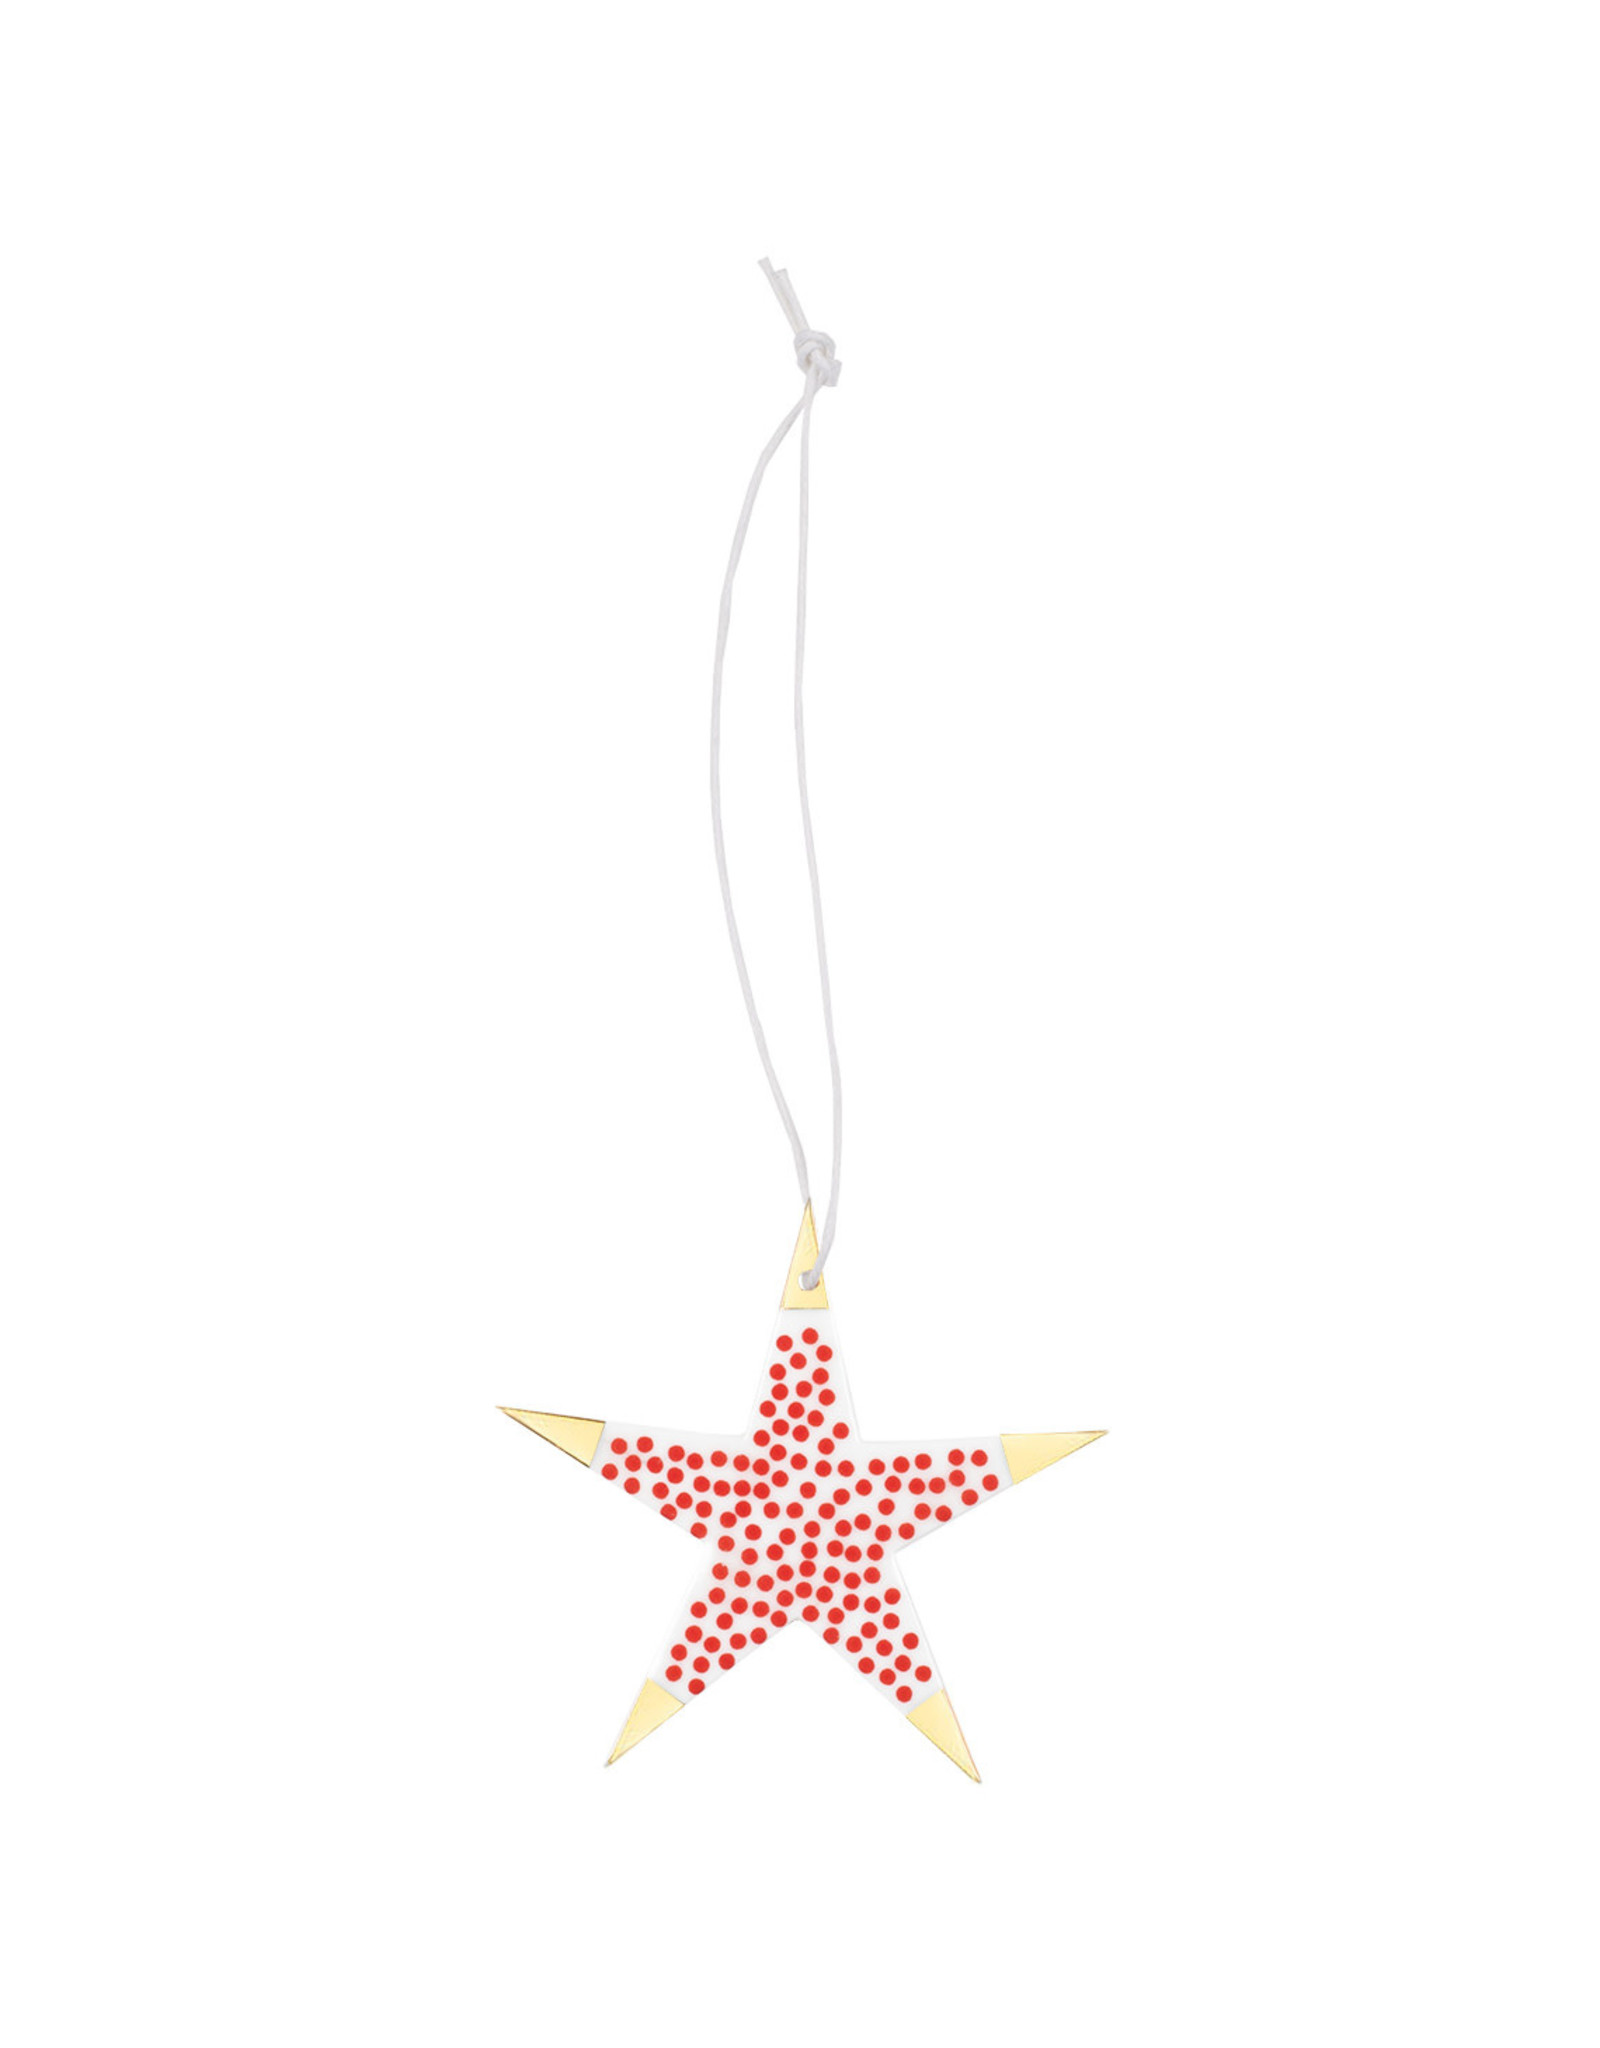 Raeder Lucky Star S - Rood met Gouden punten - 8 x 8 cm